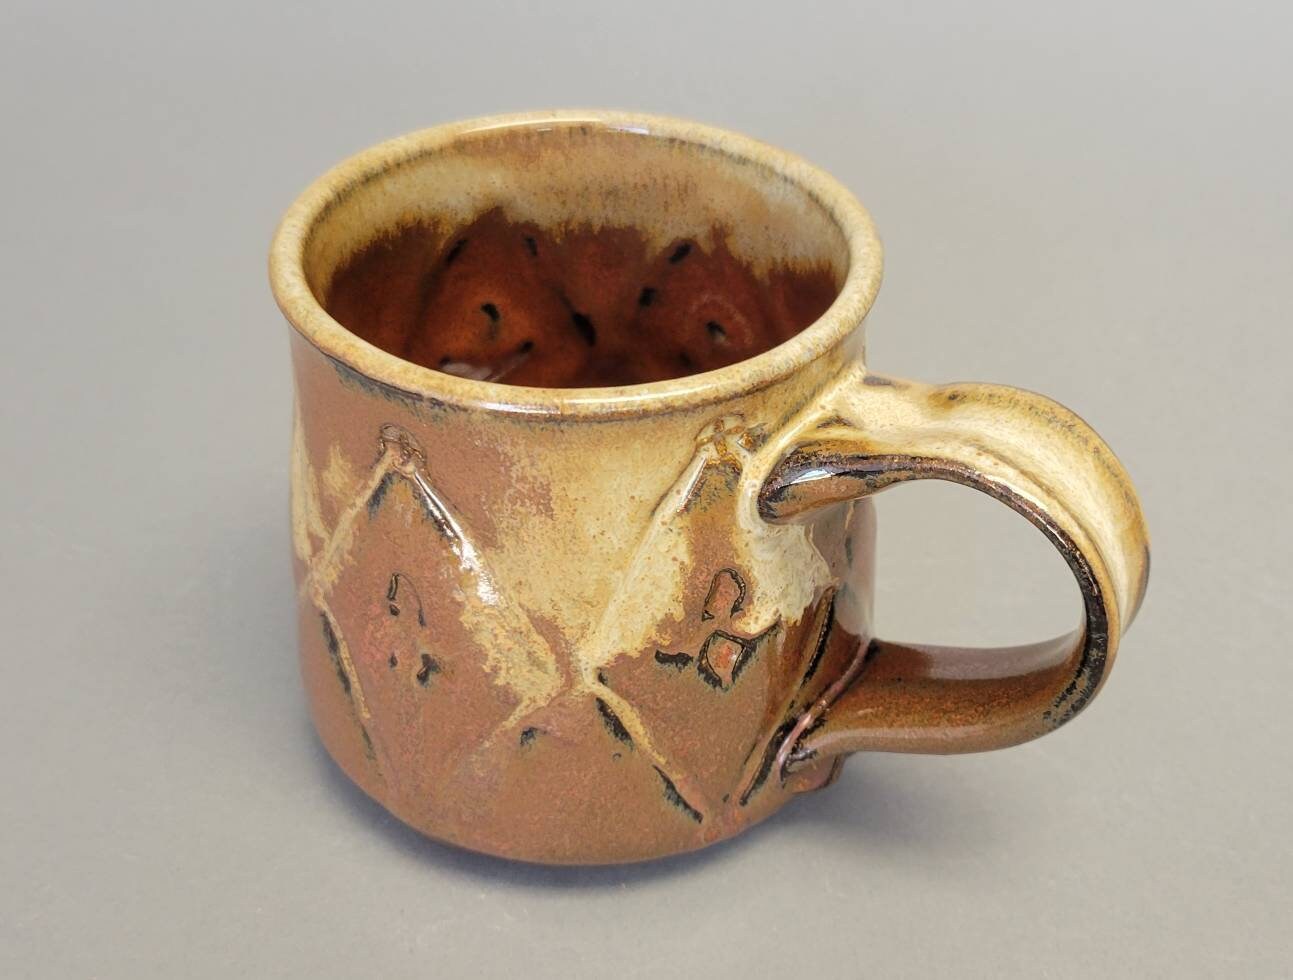 Geometric Texture Ceramic Coffee Mug in Earthy Rust Red Brick Tan